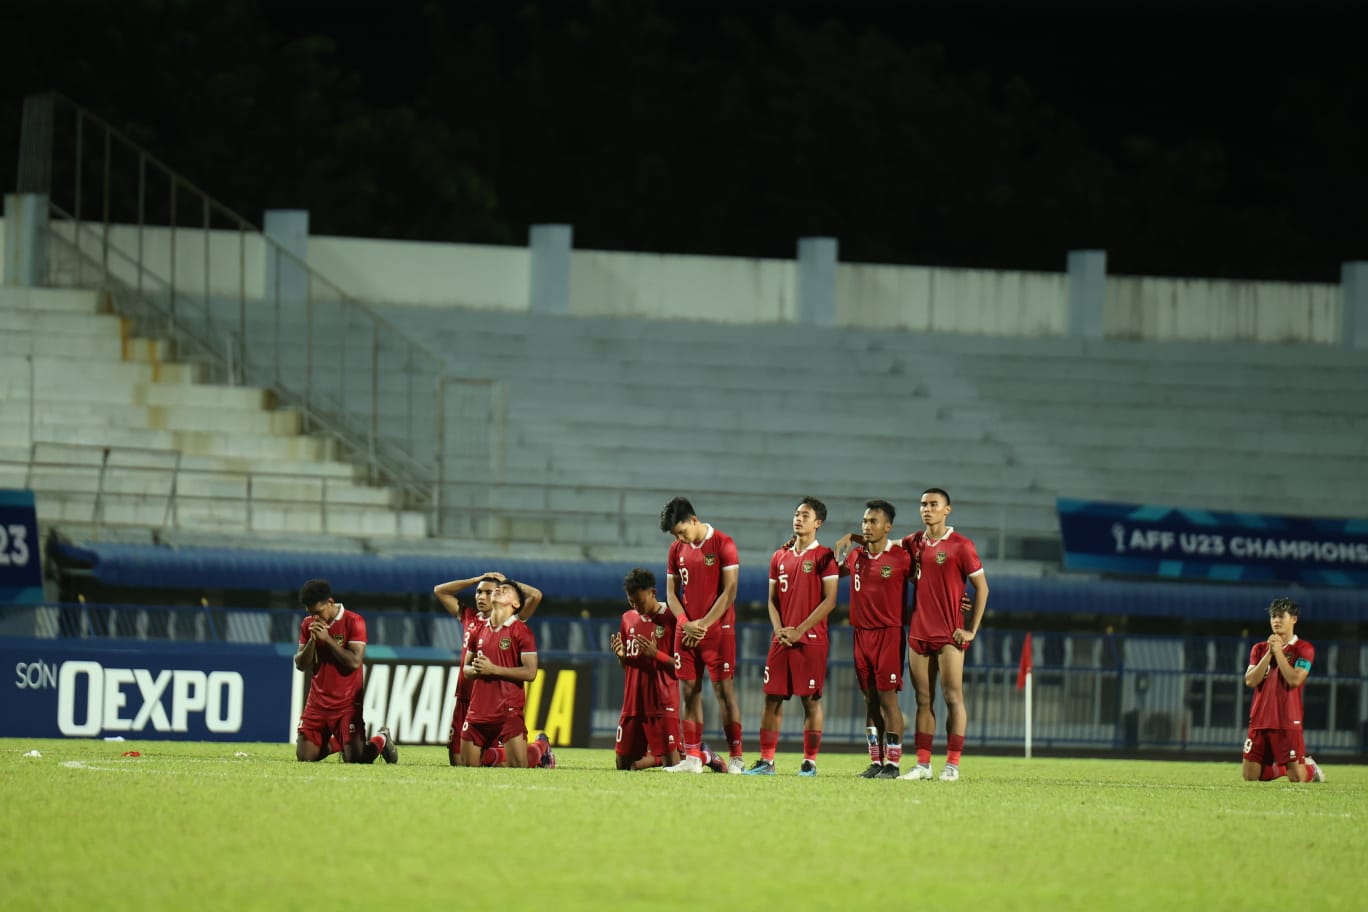 Dihadapkan FIFA Matchday dan Kualifikasi Piala Asia U-23, Bagaimana STY Bagi Konsentrasi?